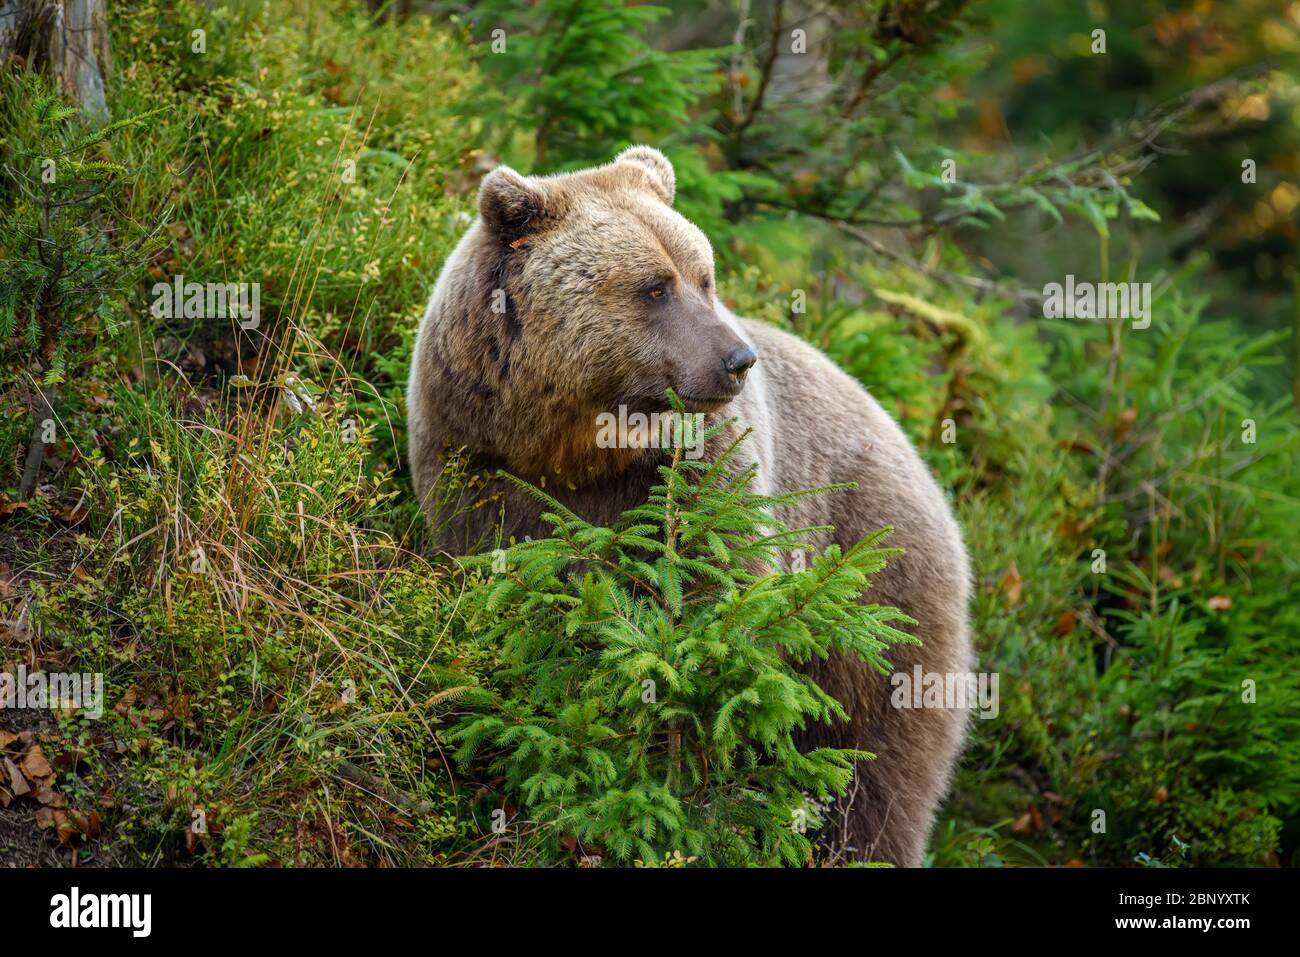 Nahaufnahme großer Braunbär im Wald. Gefährliches Tier in natürlicher Umgebung. Wildlife-Szene Stockfoto